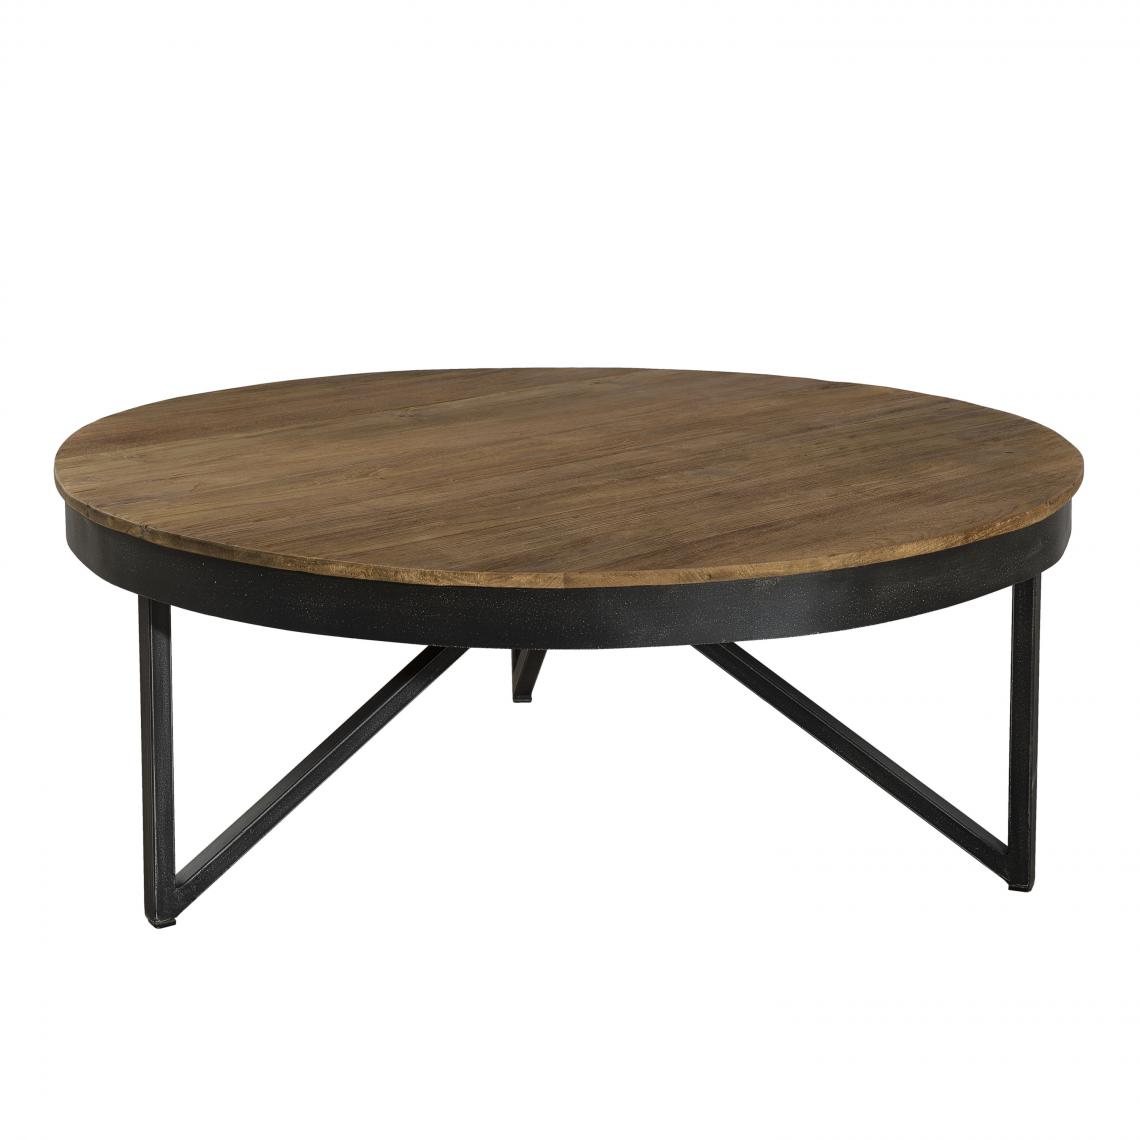 MACABANE - Table basse ronde 90 x 90 cm bois et métal - SIANA - Tables basses